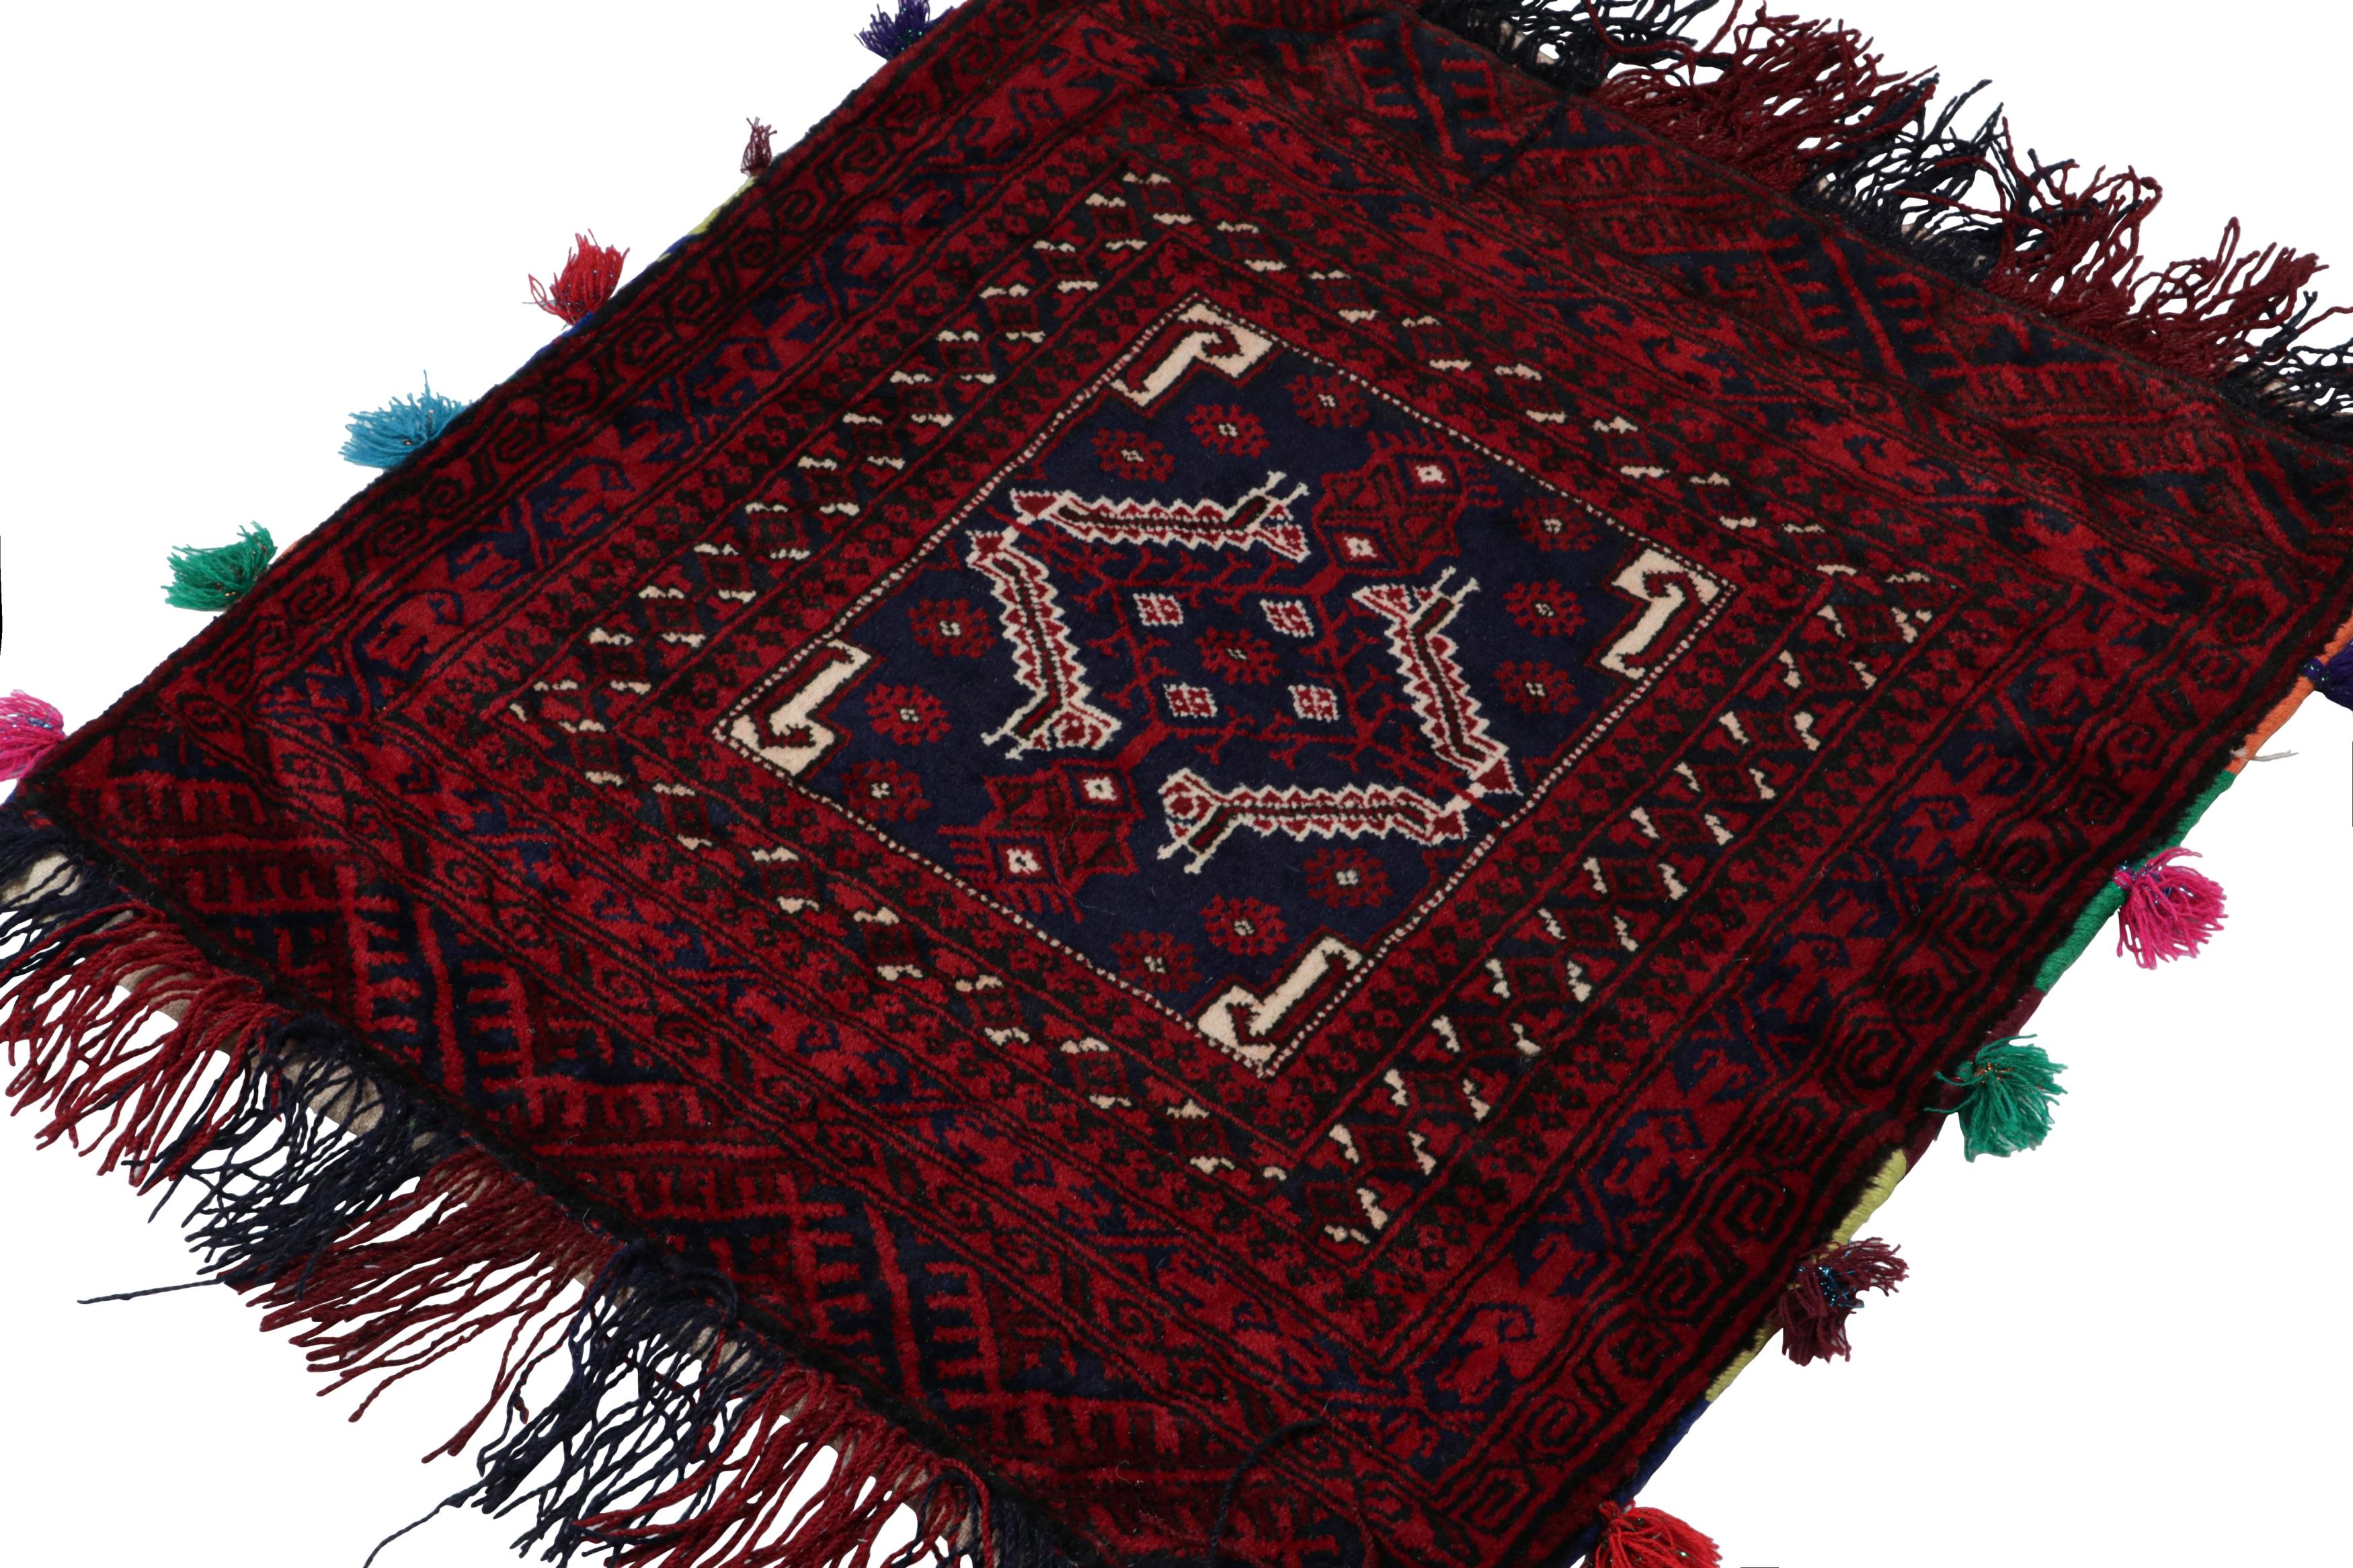 Noué à la main en laine, ce tapis persan Baluch 2x2 des années 1950 est le dernier à entrer dans la collection Antique & Kilim de Rug & Kilim.

Sur le Design :

Le tapis Vintage By porte un médaillon frappant avec des motifs tribaux dans des tons